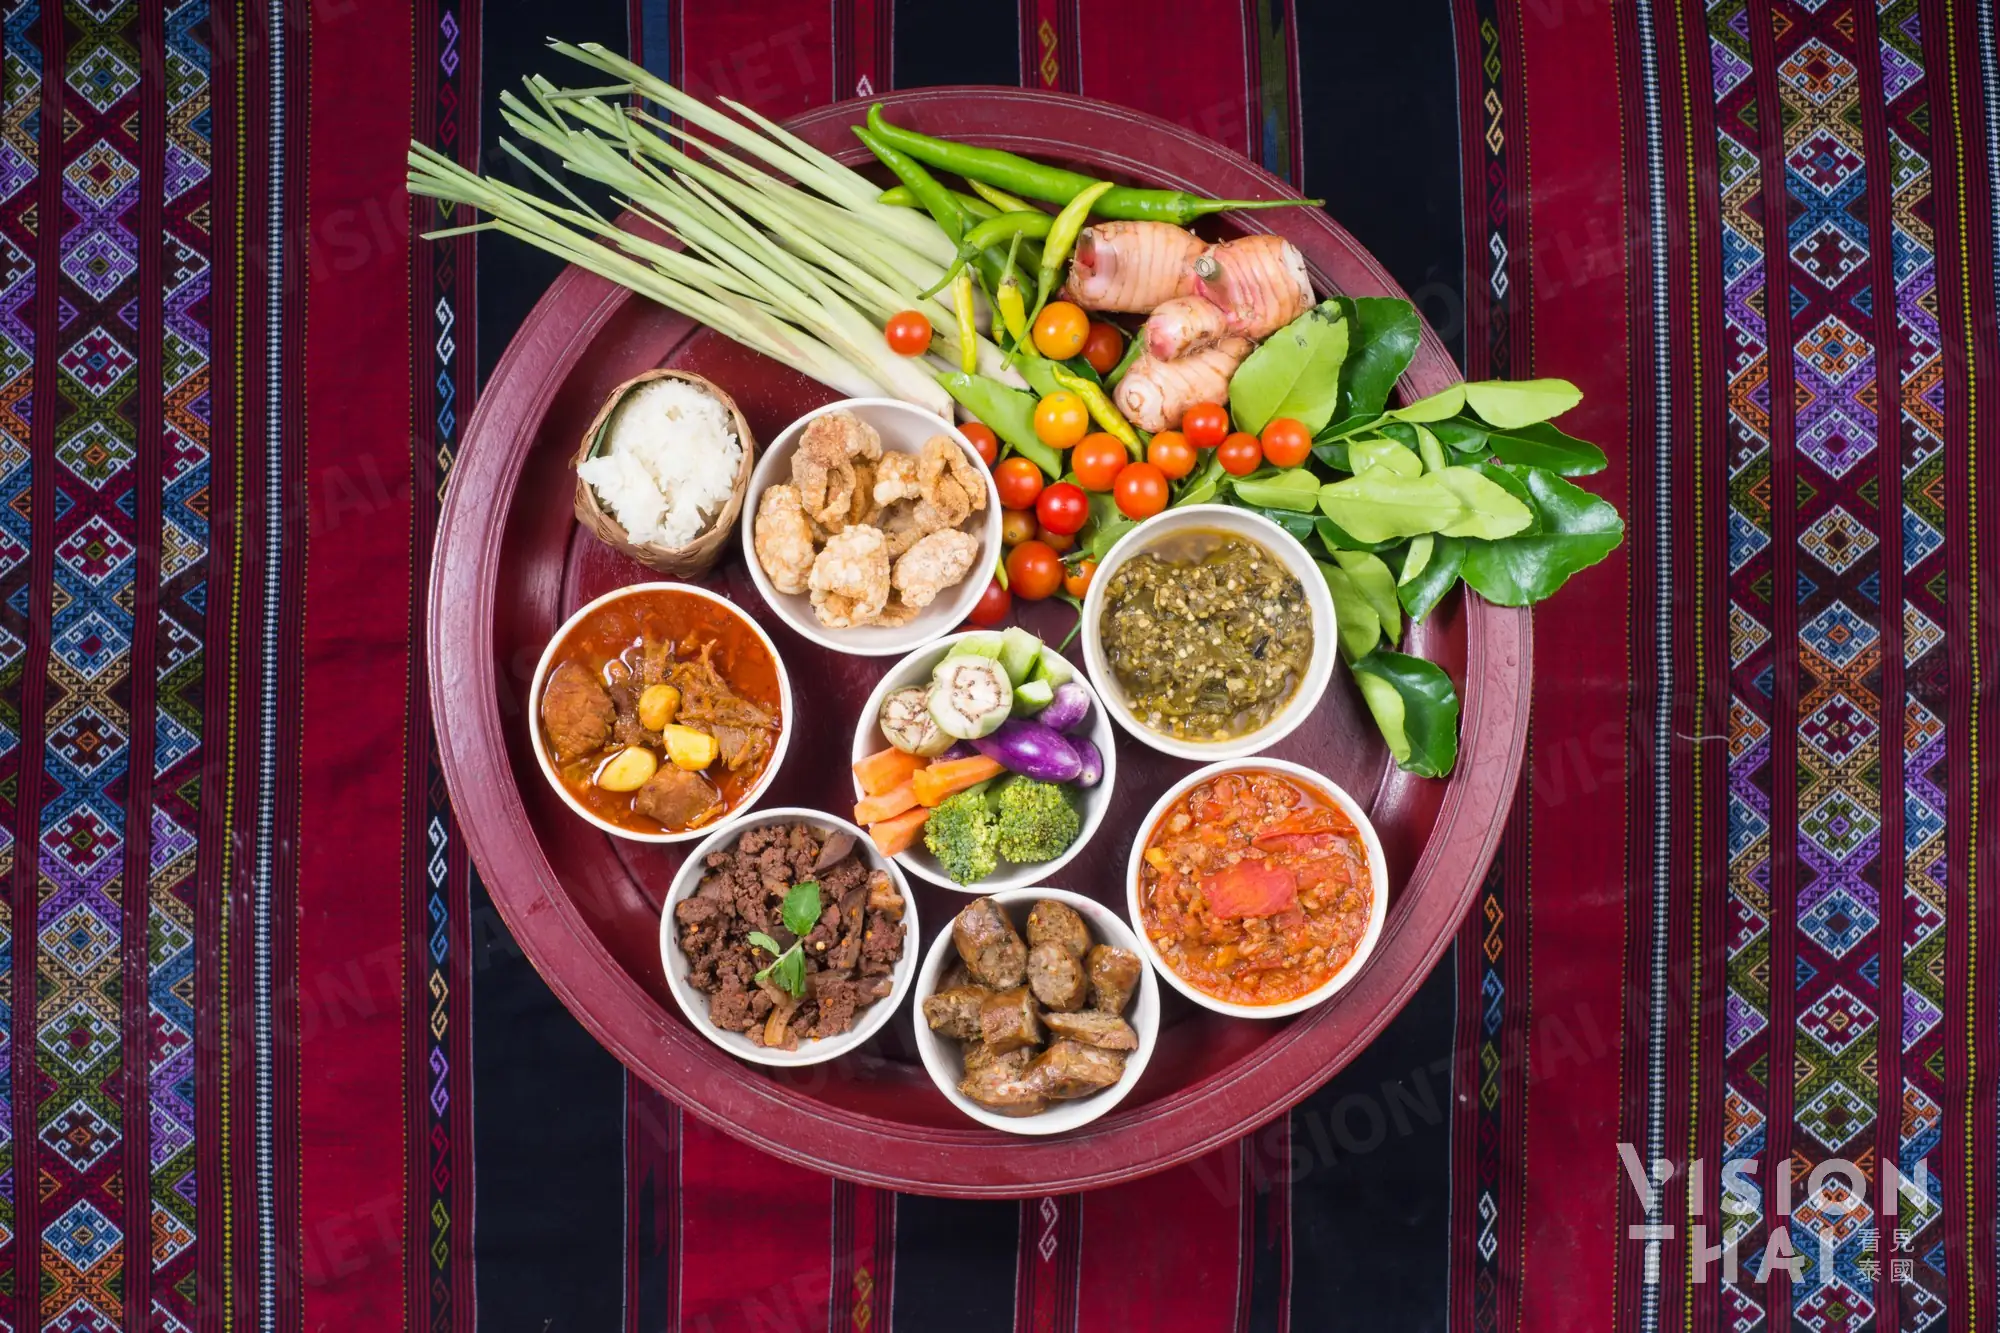 傳統蘭納菜喜歡食材沾醬料配著吃，更能吃出食物的新鮮風味（VISION THAI 看見泰國）